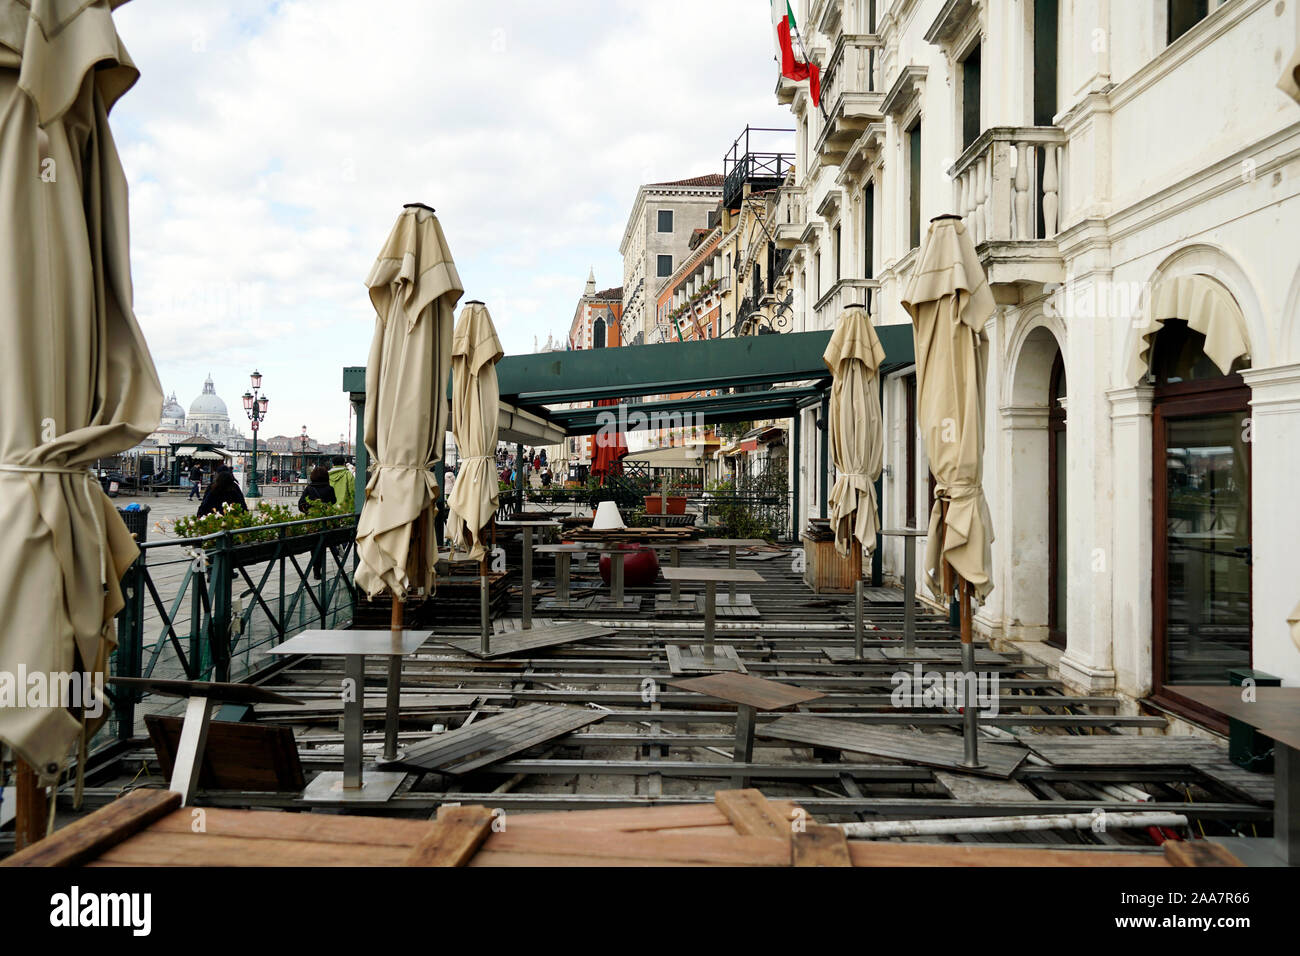 Bei lions Restaurant in Venedig, Italien beschädigt durch Hochwasser am 18.11.2019 zwei Tage nach dem Hochwasser Stockfoto